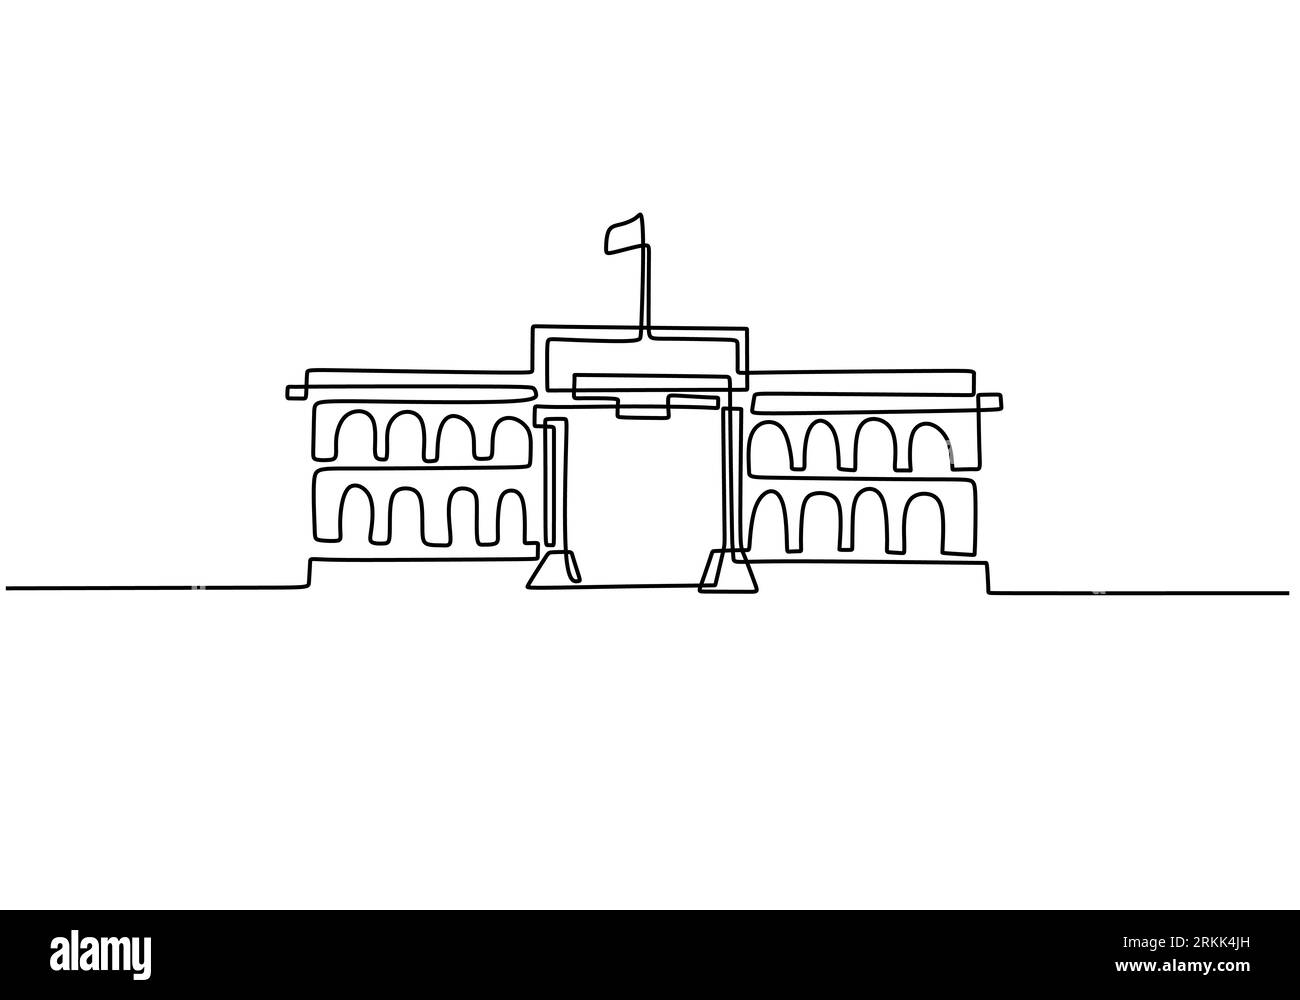 Bâtiment classique avec des colonnes dans le style de dessin continu d'une ligne. Architecture typique pour le gouvernement, la cour, l'université ou le musée. Illustration de Vecteur